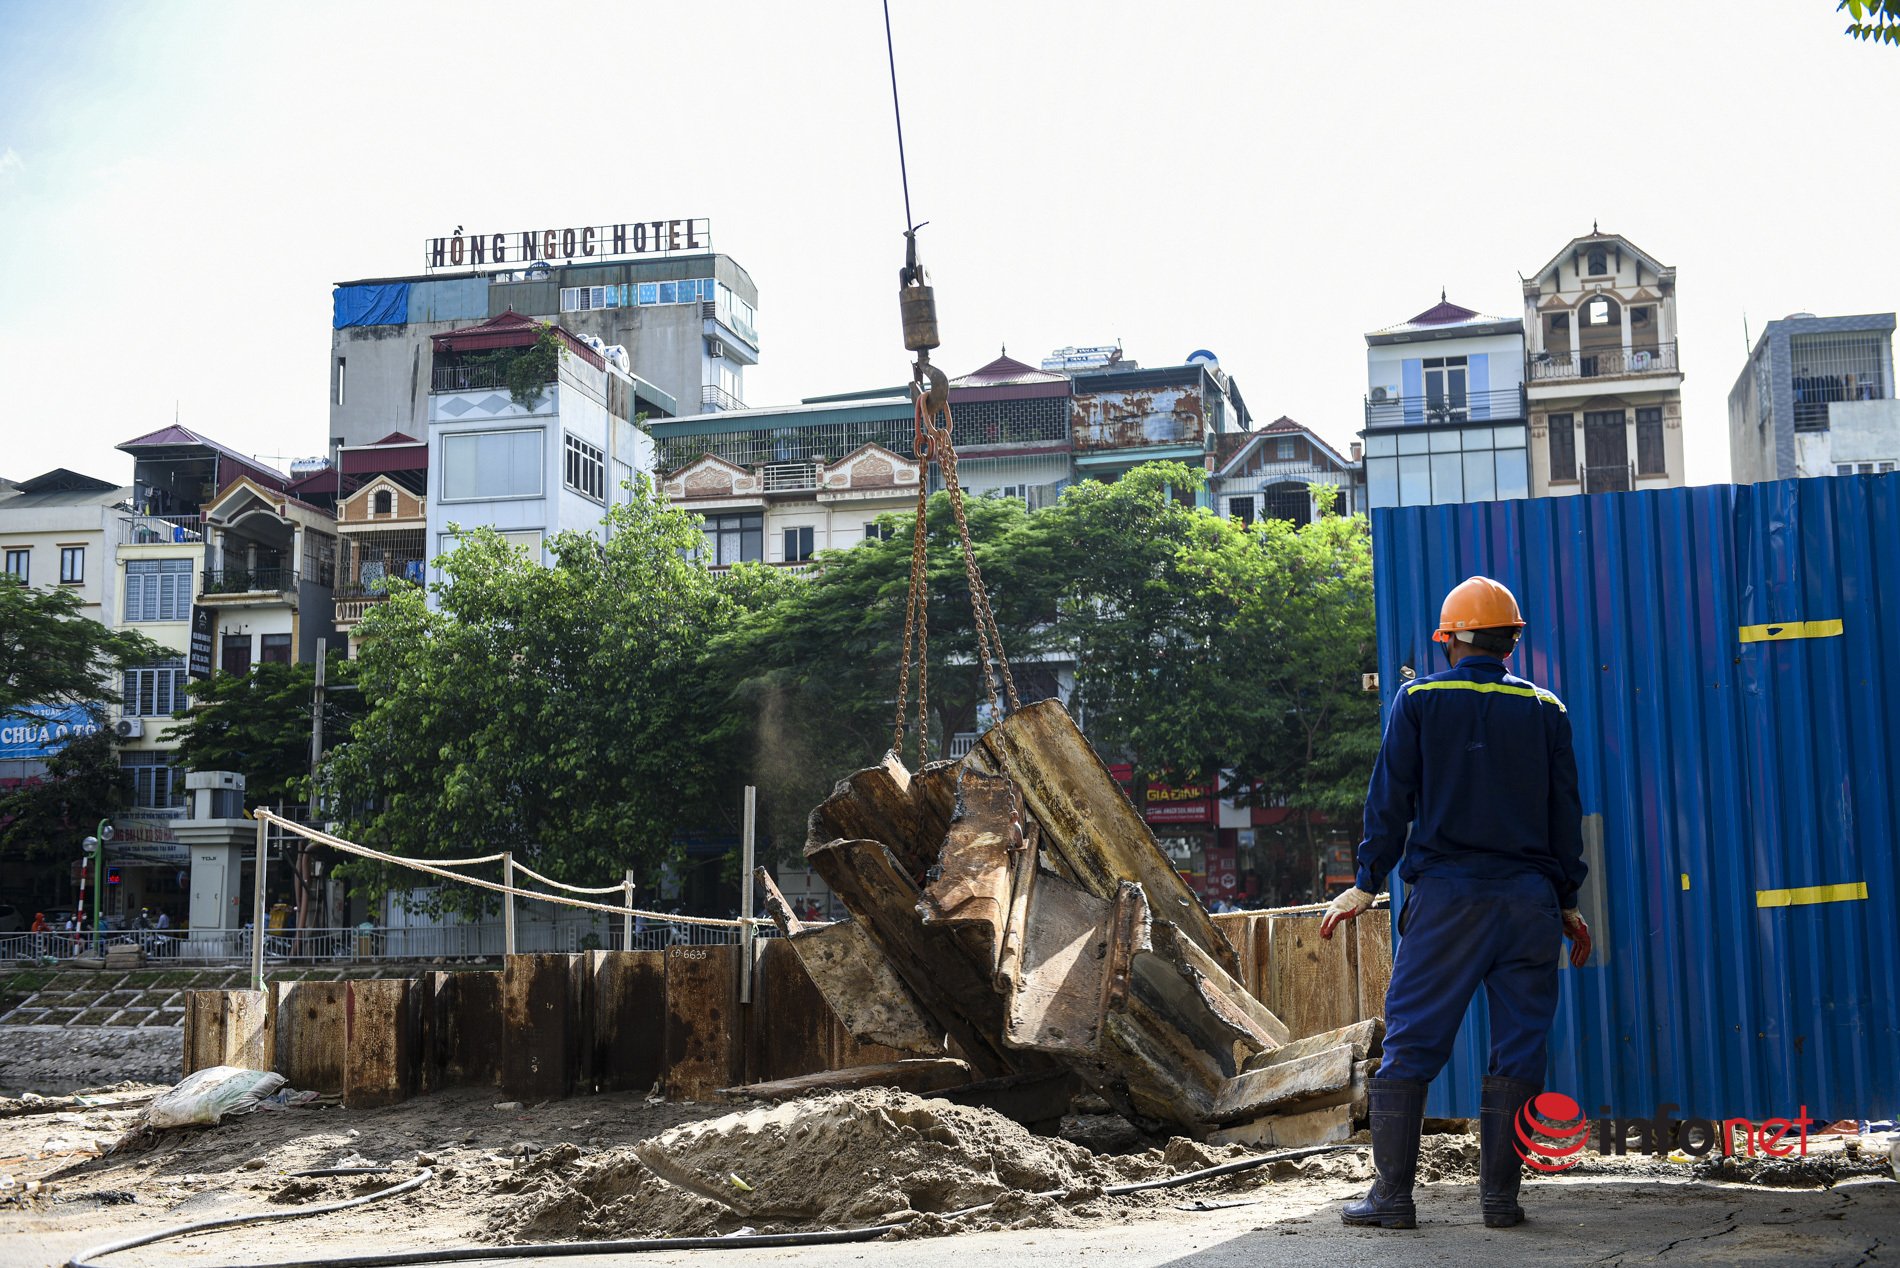 Hà Nội: Xuất hiện hố sụt lún, kéo cả mảng đường sập nghiêng trên đường Vũ Tông Phan